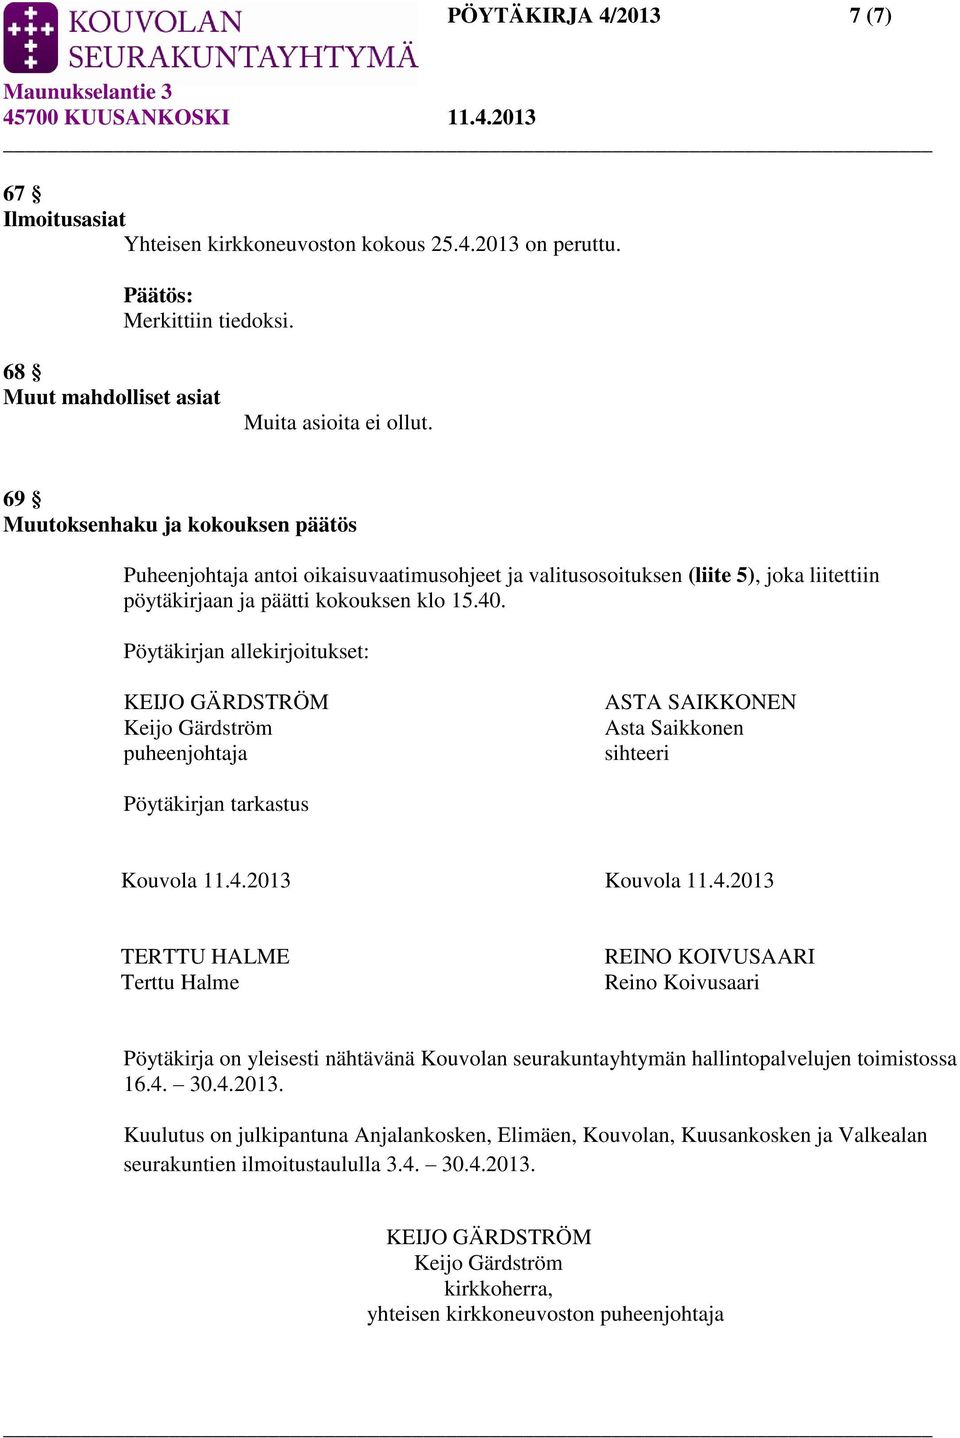 Pöytäkirjan allekirjoitukset: KEIJO GÄRDSTRÖM Keijo Gärdström puheenjohtaja ASTA SAIKKONEN Asta Saikkonen sihteeri Pöytäkirjan tarkastus Kouvola 11.4.